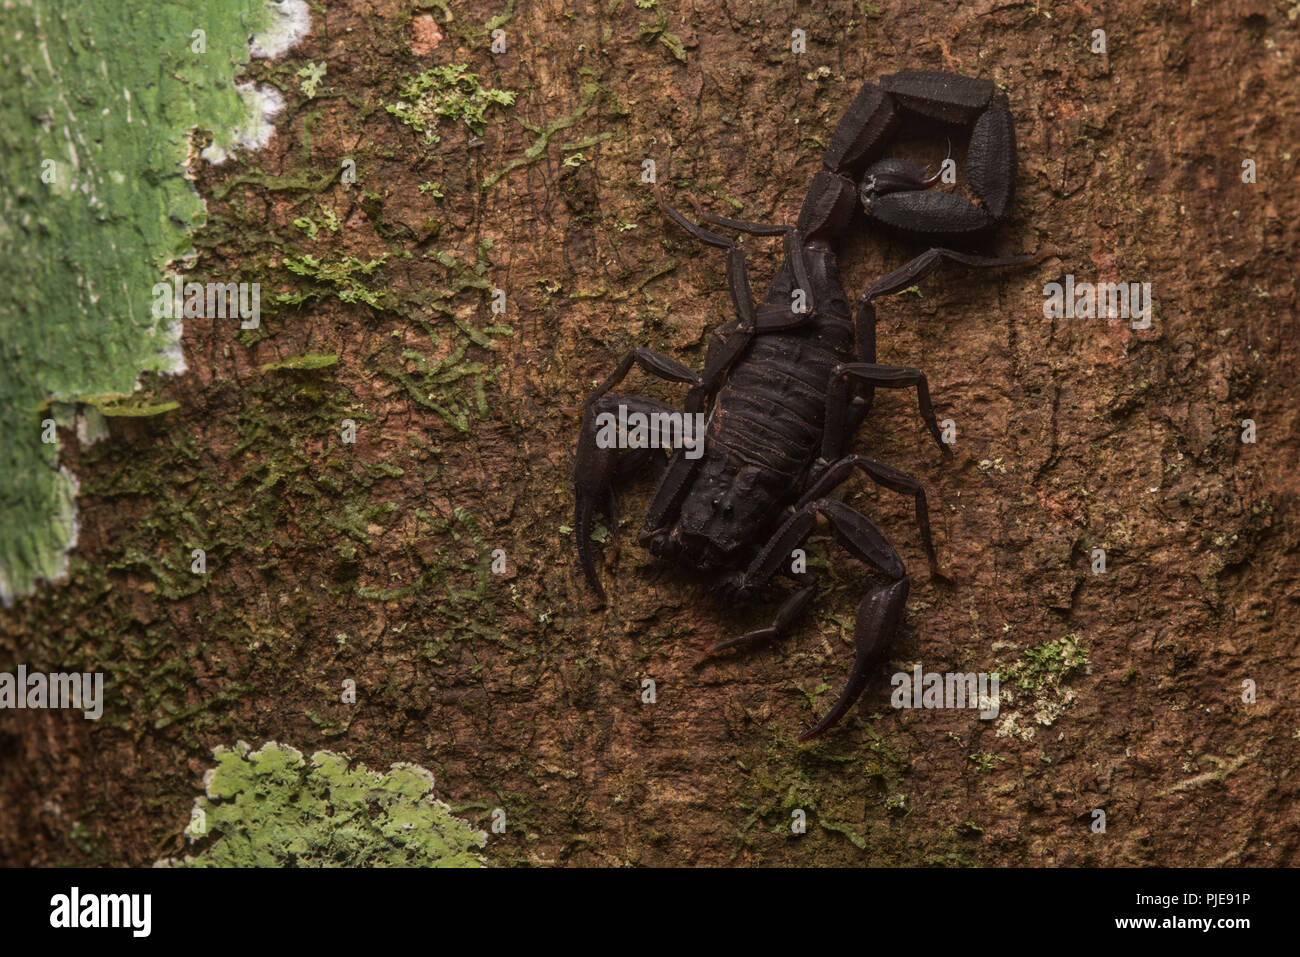 Une espèce de scorpion dans le genre Tityus grimpe dans un arbre. Ce genre comprend plusieurs espèces venimeuses dangereusement. Banque D'Images